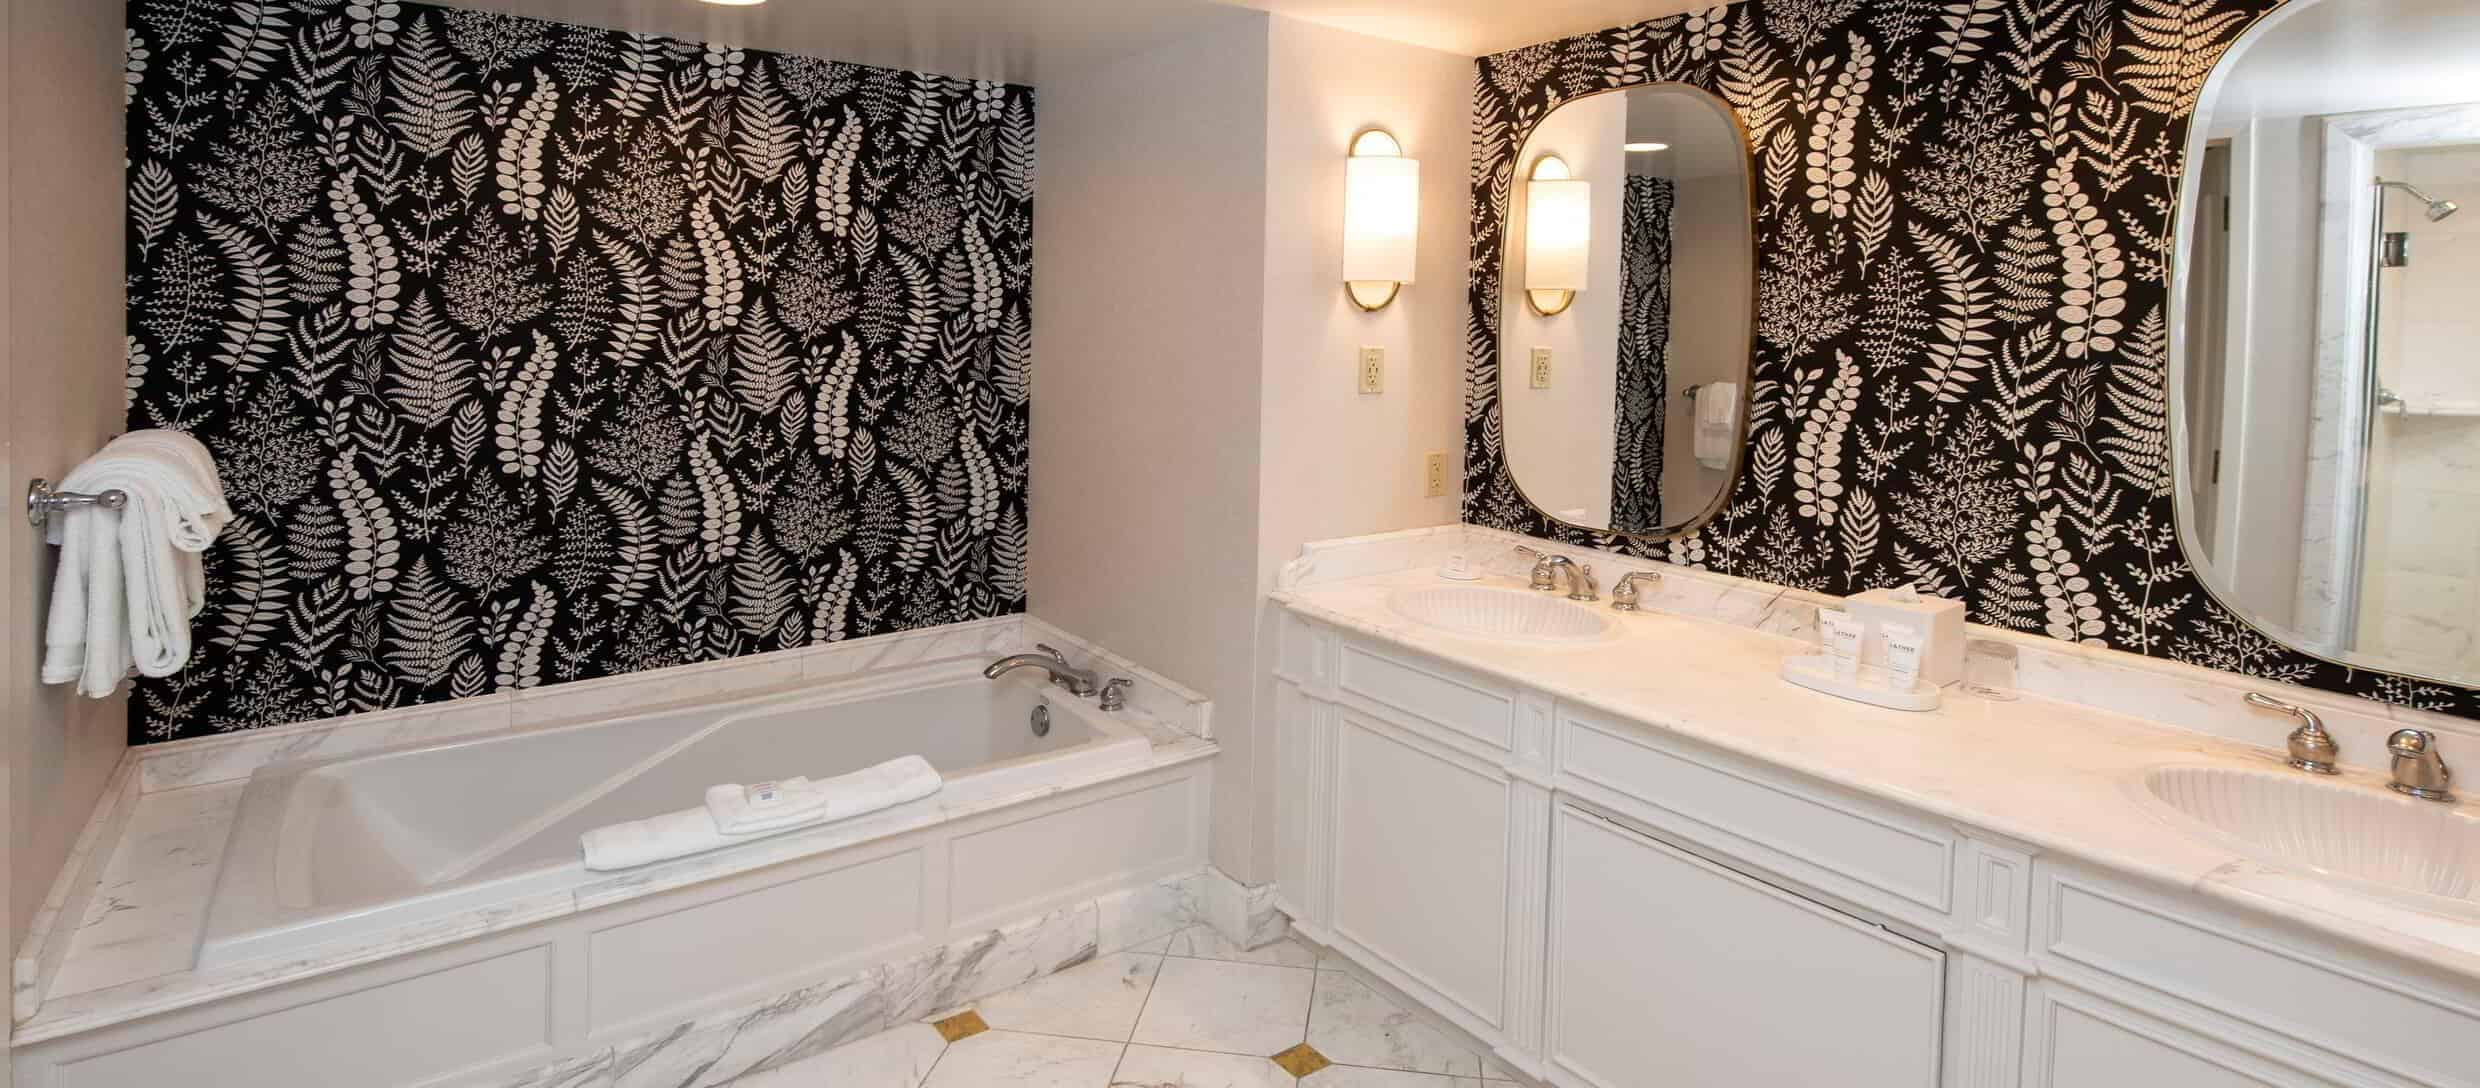 beau-rivage-hotel-junior-suite-bathroom-dual-sink.jpg.image.2480.1088.high